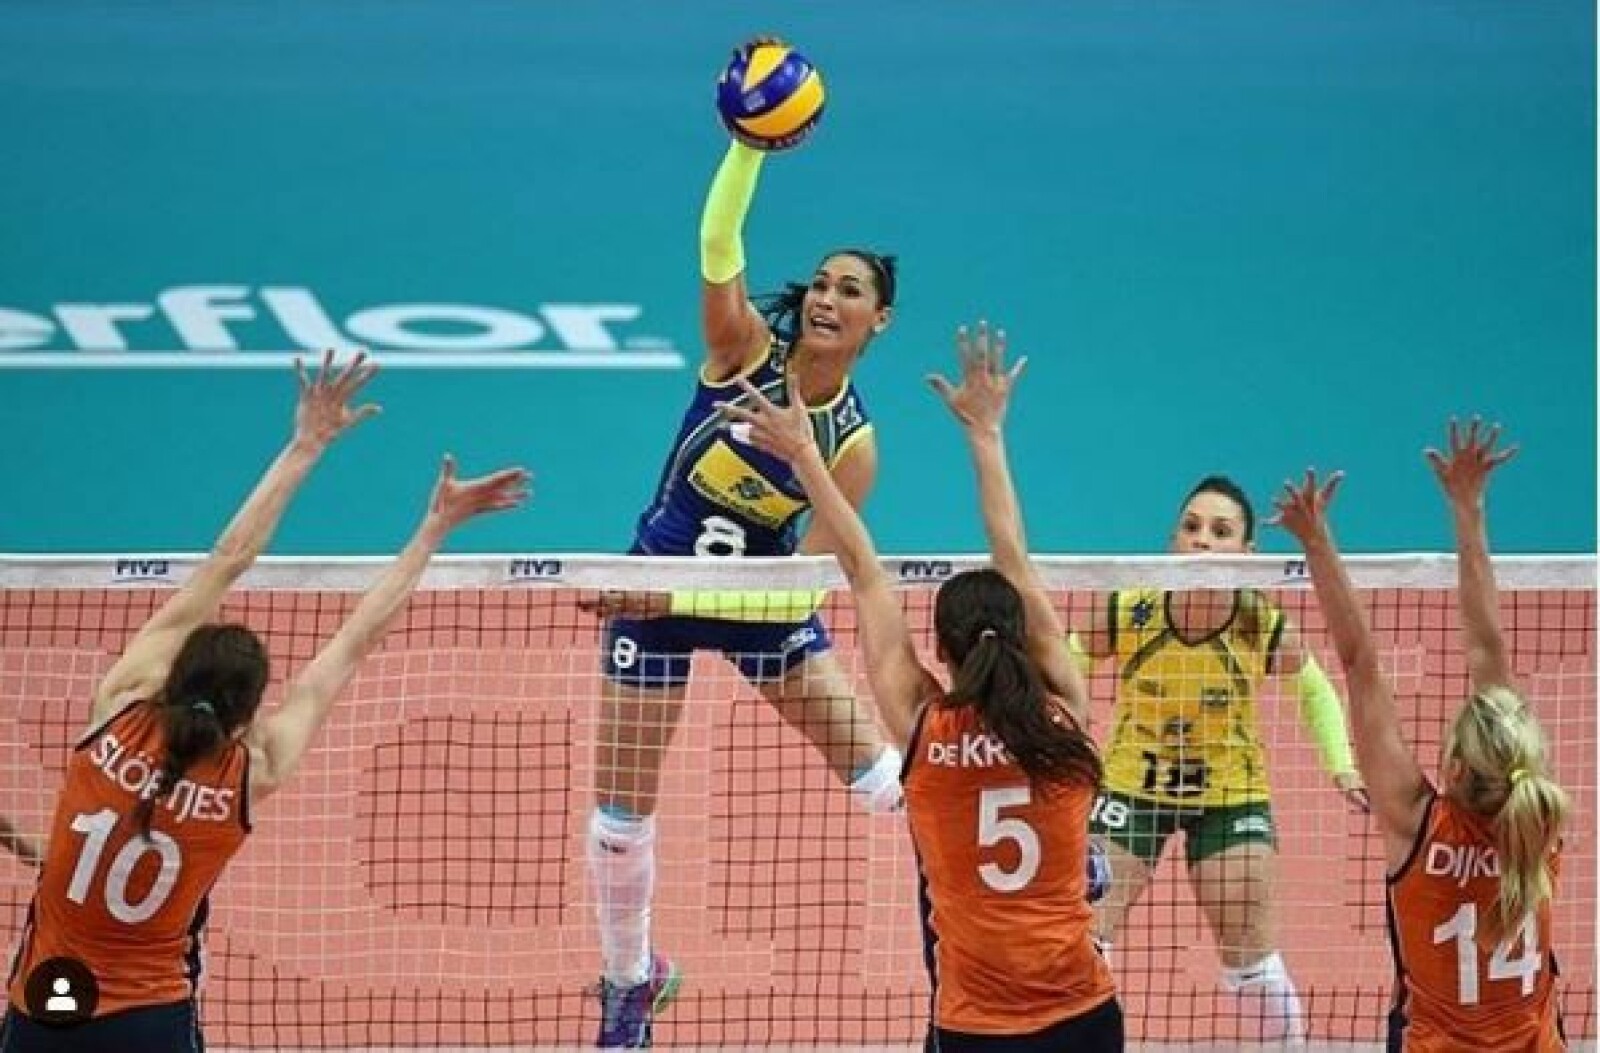 <b>JAQUELINE CARVALHO:</b> Den 1,86 m høye brasilianske volleyballspilleren er en av de ypperste i sin idrett og stjerne på laget som tok OL-gull i 2008 og 2012. Hun figurerer også høyt på rangeringer over kvinnelige idrettstjerner menn lar seg begeistre over.